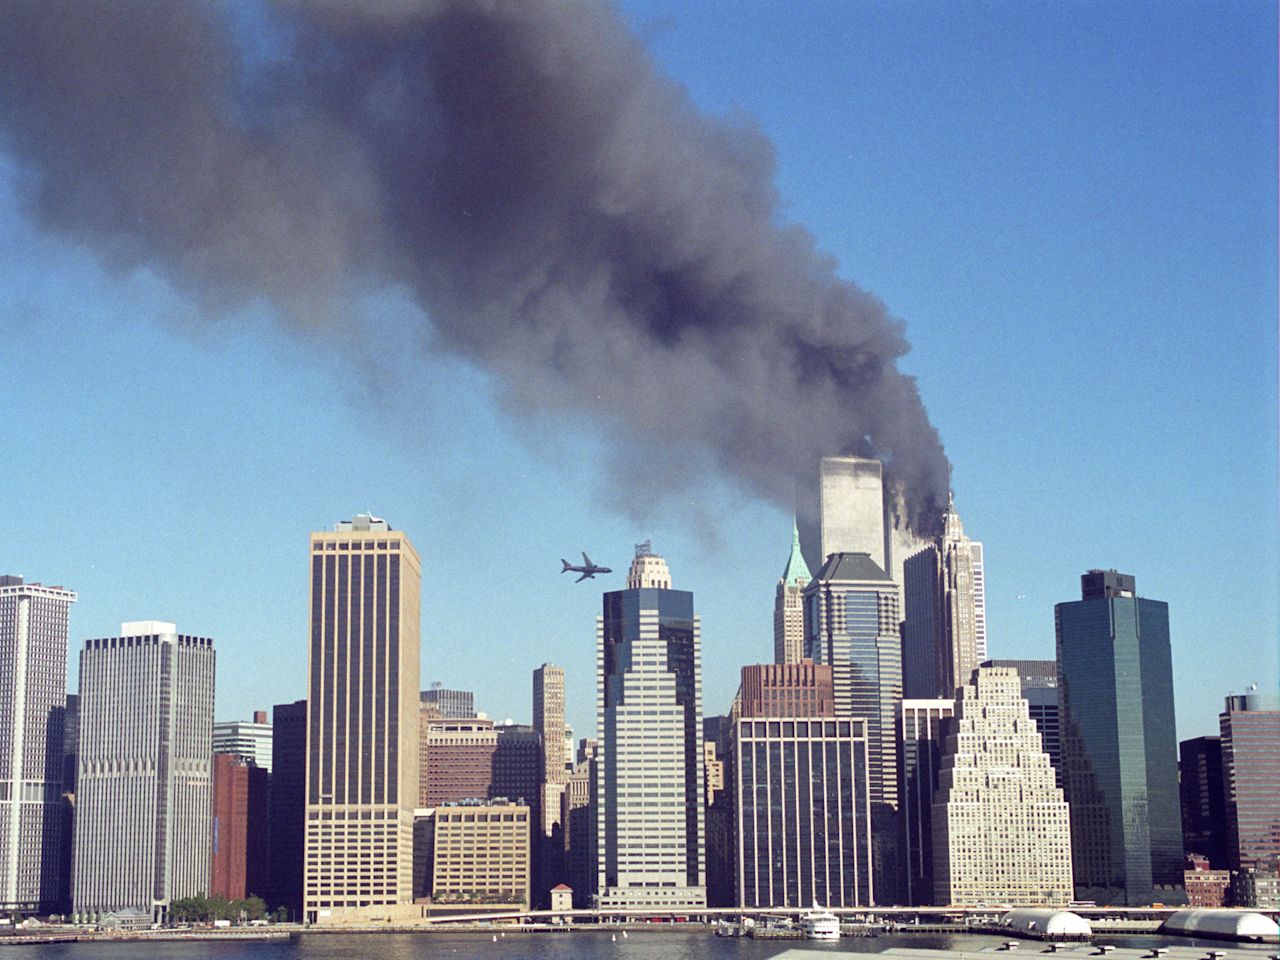 Сколько этажей было в башнях близнецах. Башни ВТЦ В Нью-Йорке. Всемирный торговый центр в Нью-Йорке башни Близнецы. 11 September 2001 New York. Небоскрёбы Близнецы в Нью-Йорке.